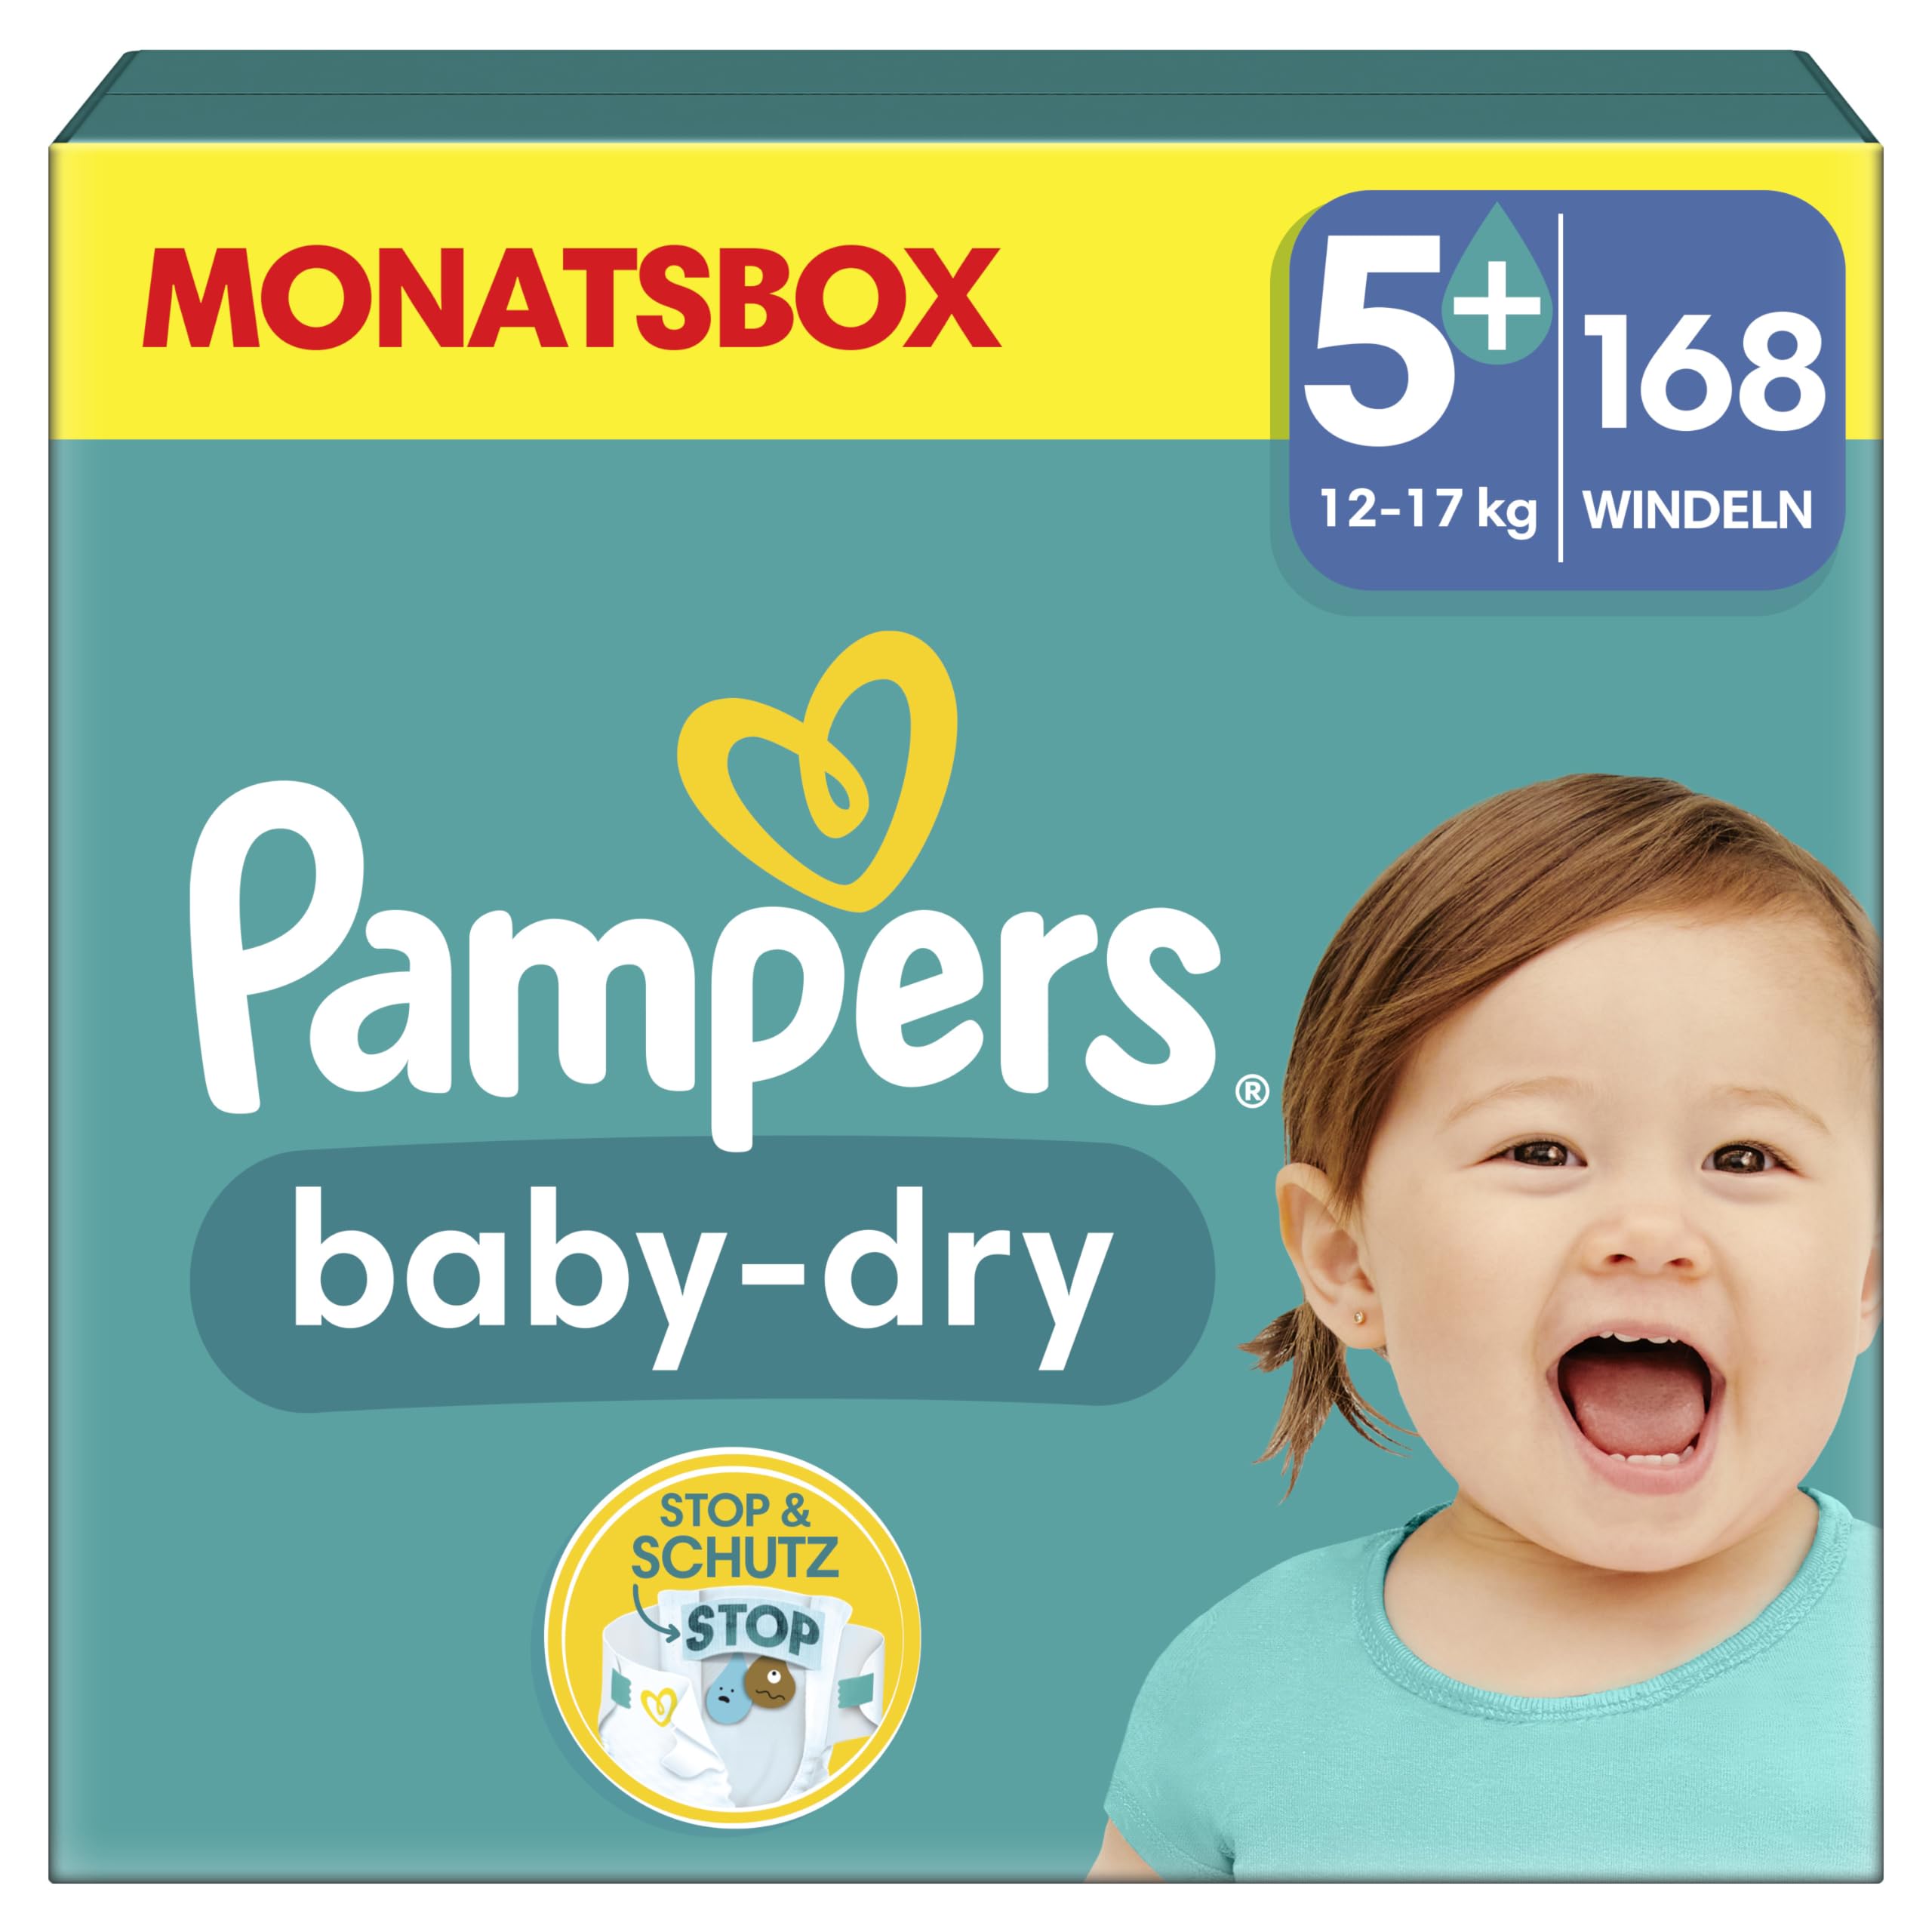 Pampers Windeln Größe 5+ (12-17kg) Baby-Dry, Junior Plus, MONATSBOX, bis zu 12 Stunden Rundum-Auslaufschutz, 168 Stück